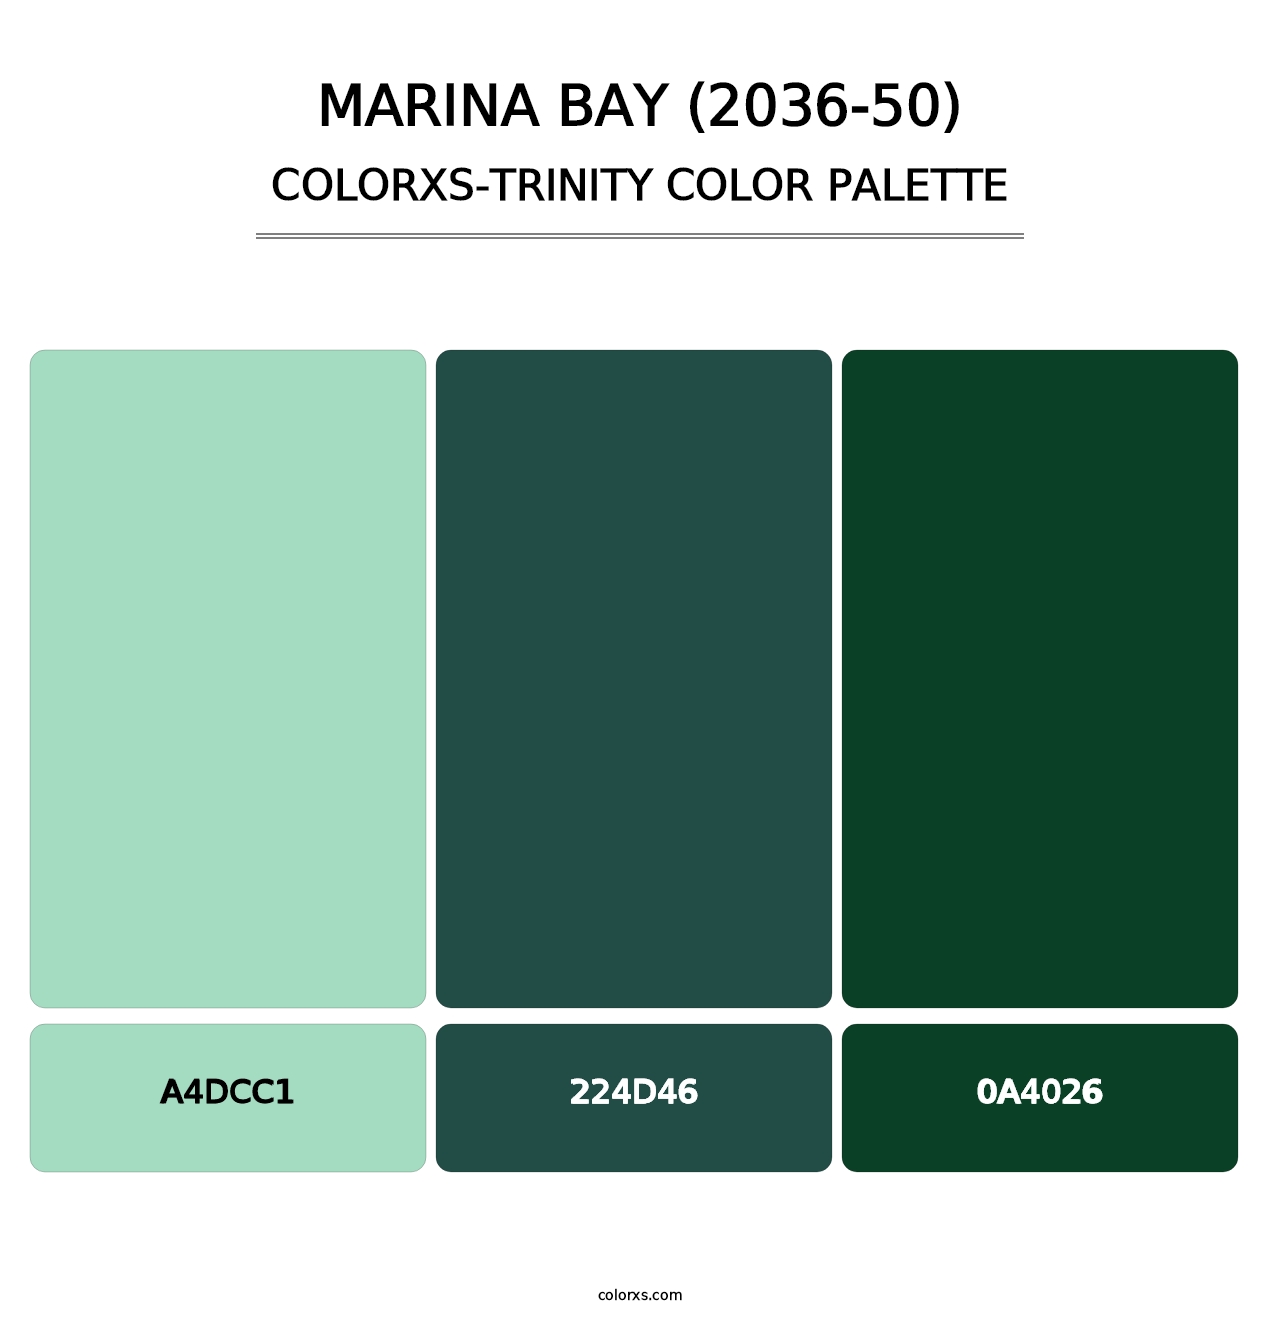 Marina Bay (2036-50) - Colorxs Trinity Palette